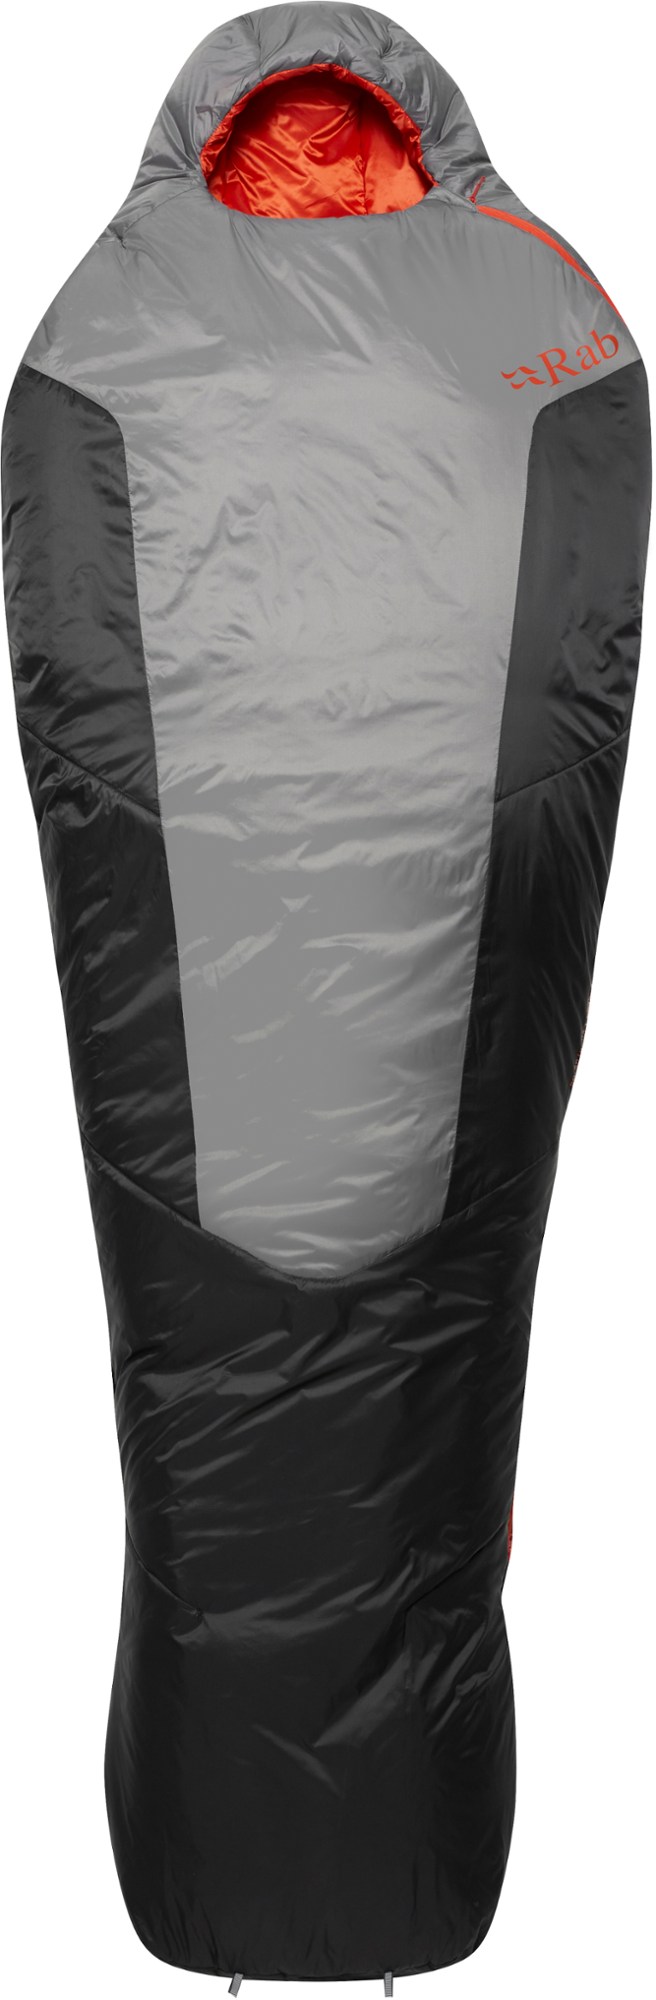 Спальный мешок Solar Ultra 1 Rab, серый